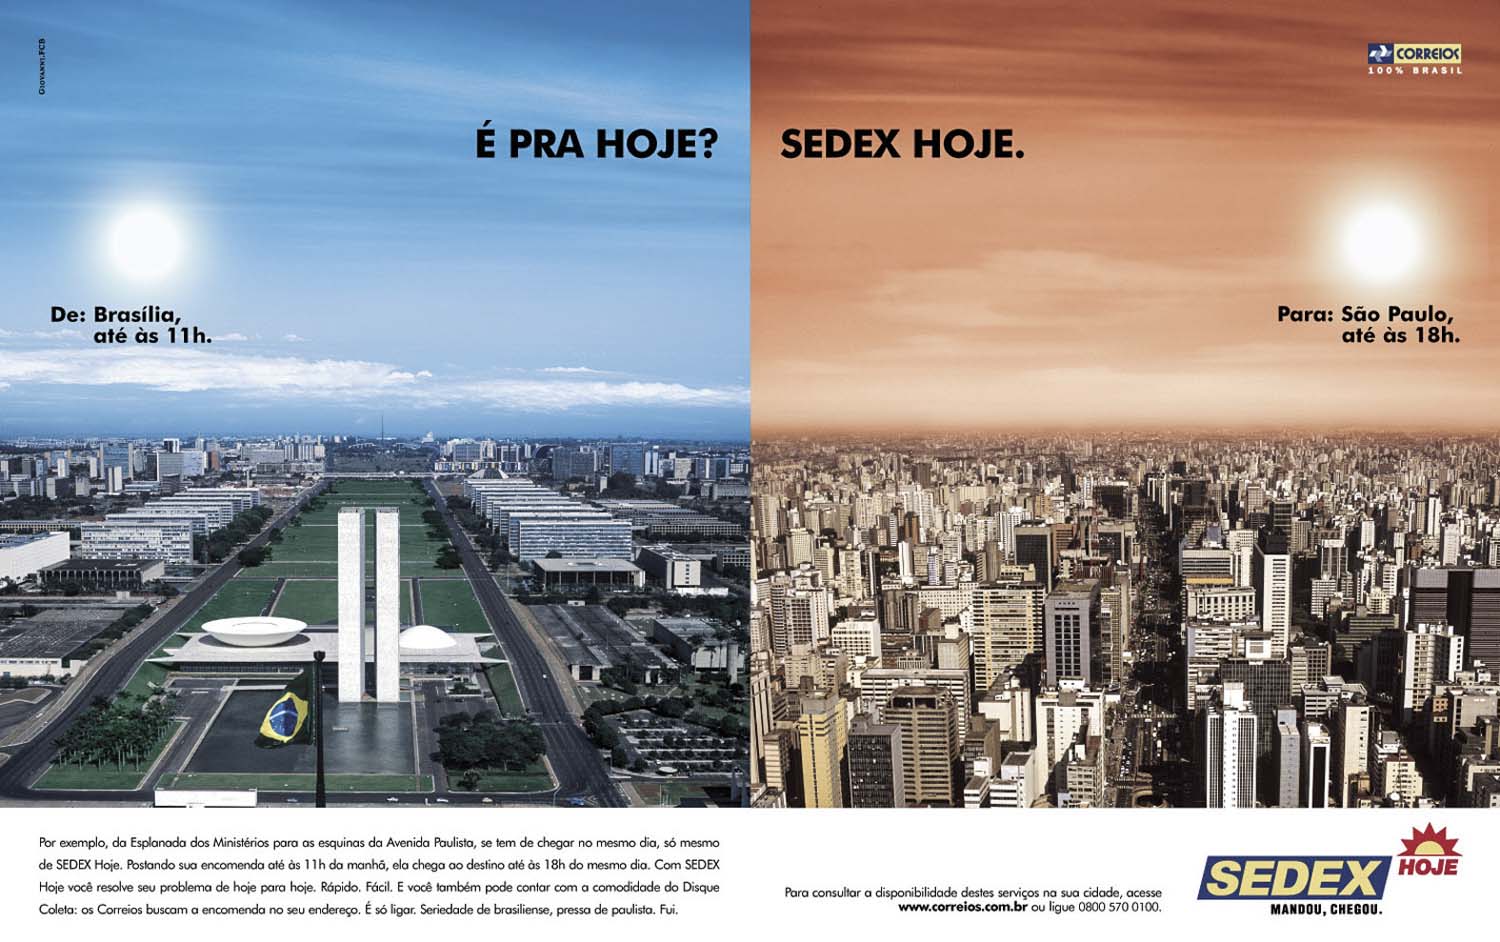 SEDEX campanha de publicidade, Agência FCB.